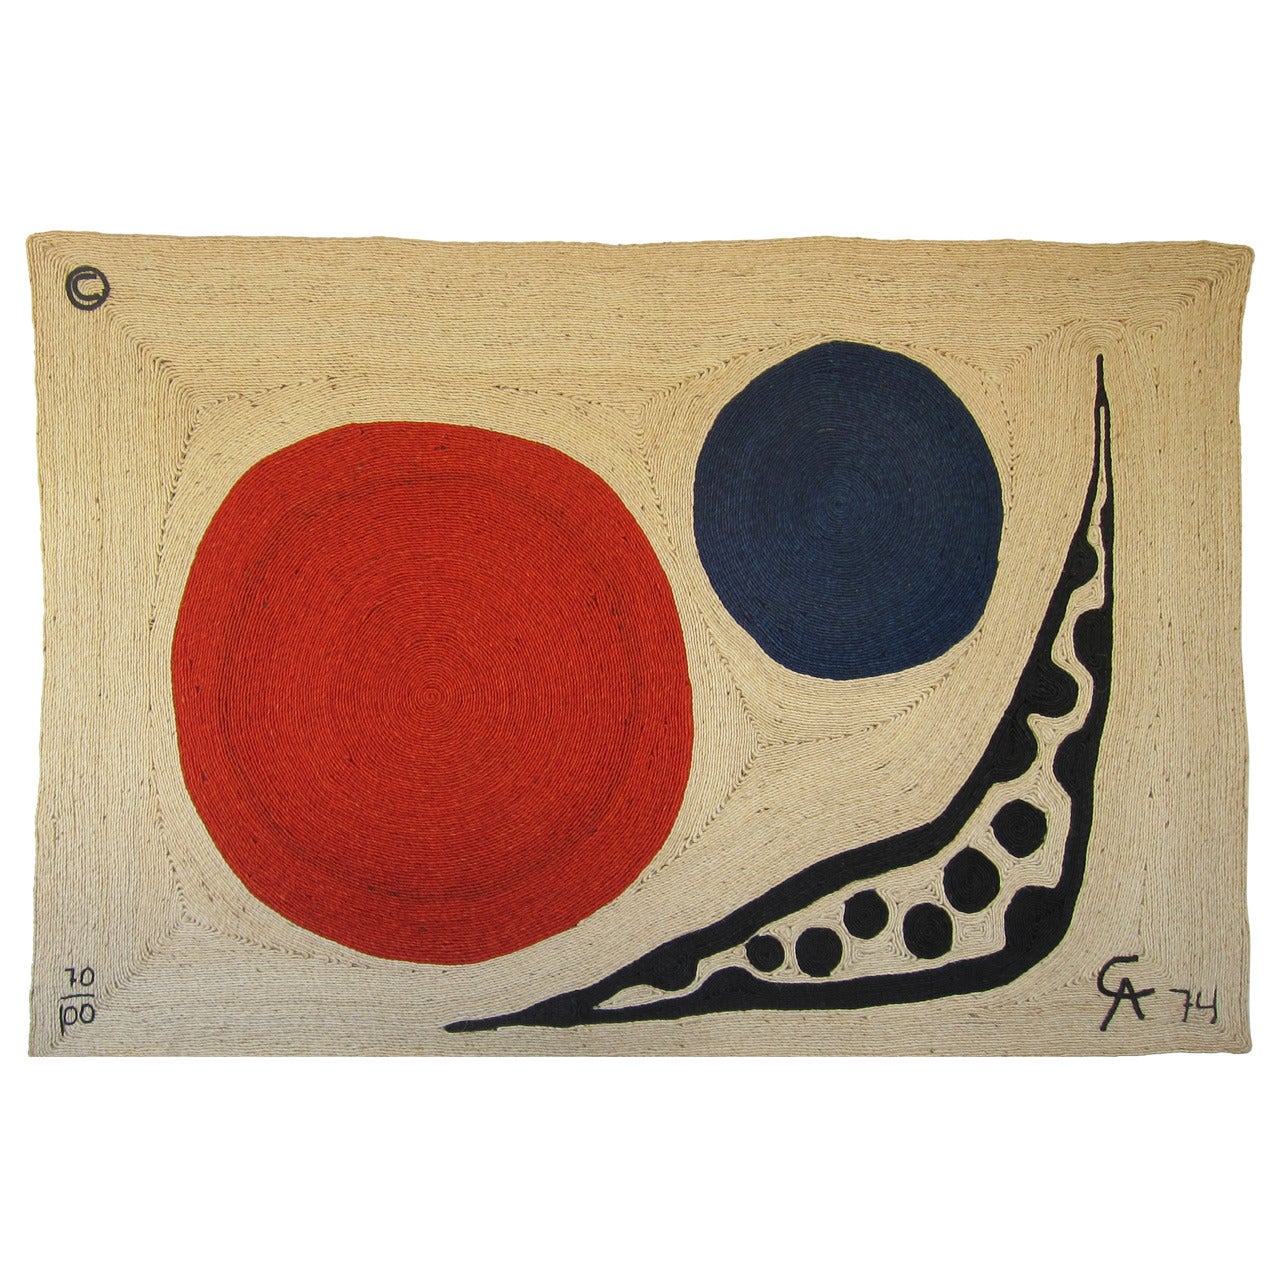 After Alexander Calder, Tapestry "Moon" 1974